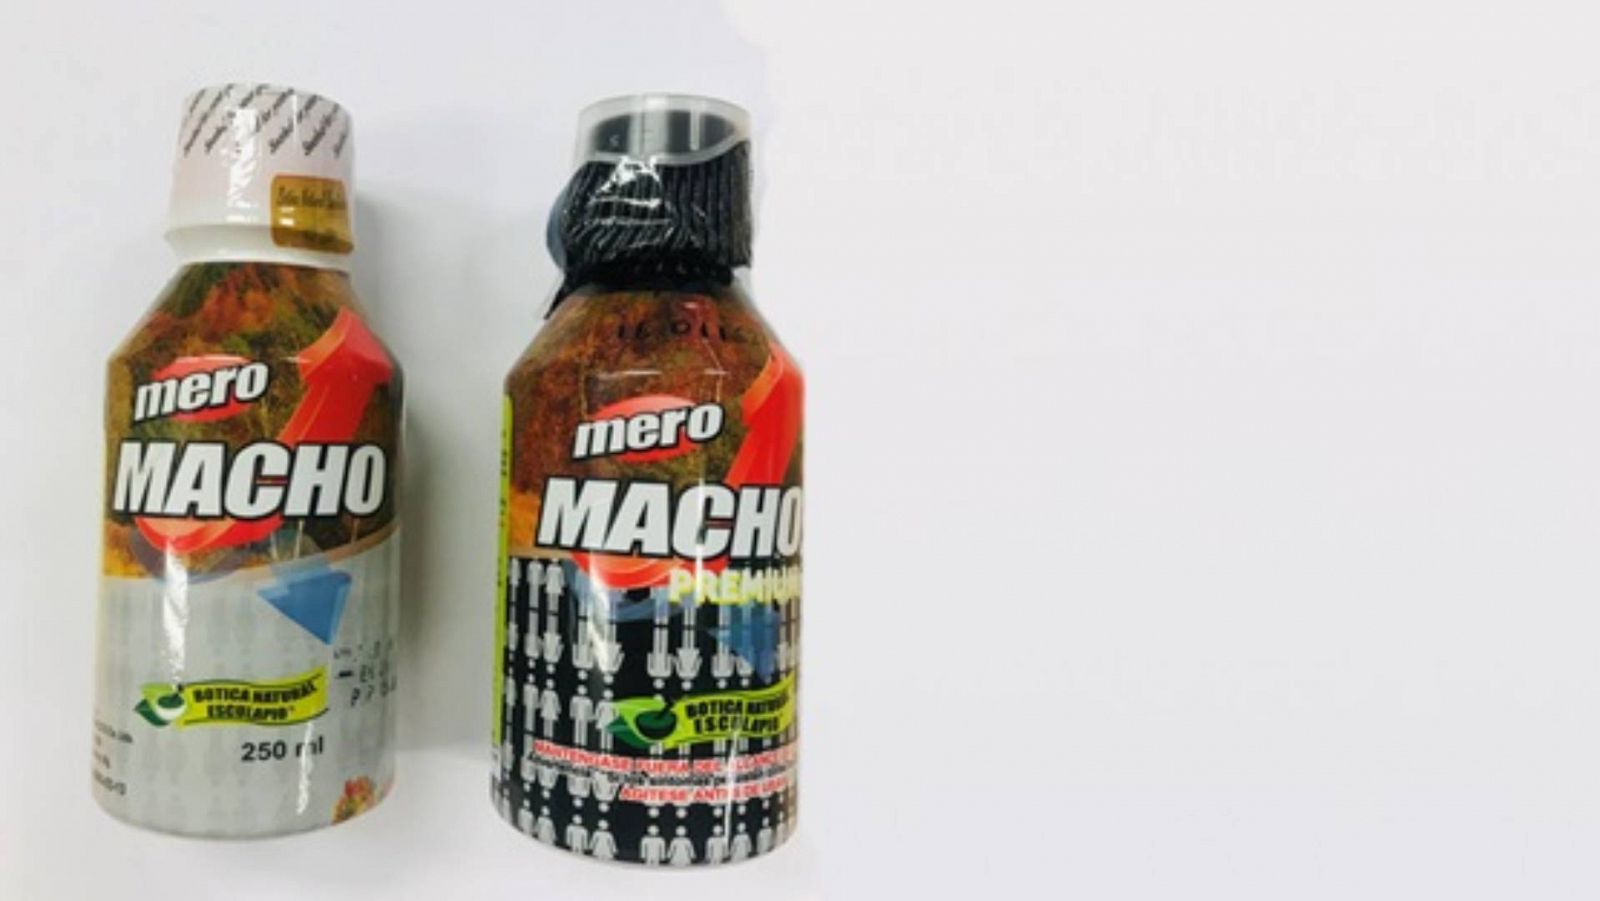 Los productos 'Mero Macho' y 'Mero Macho', retirados por la AEMPS